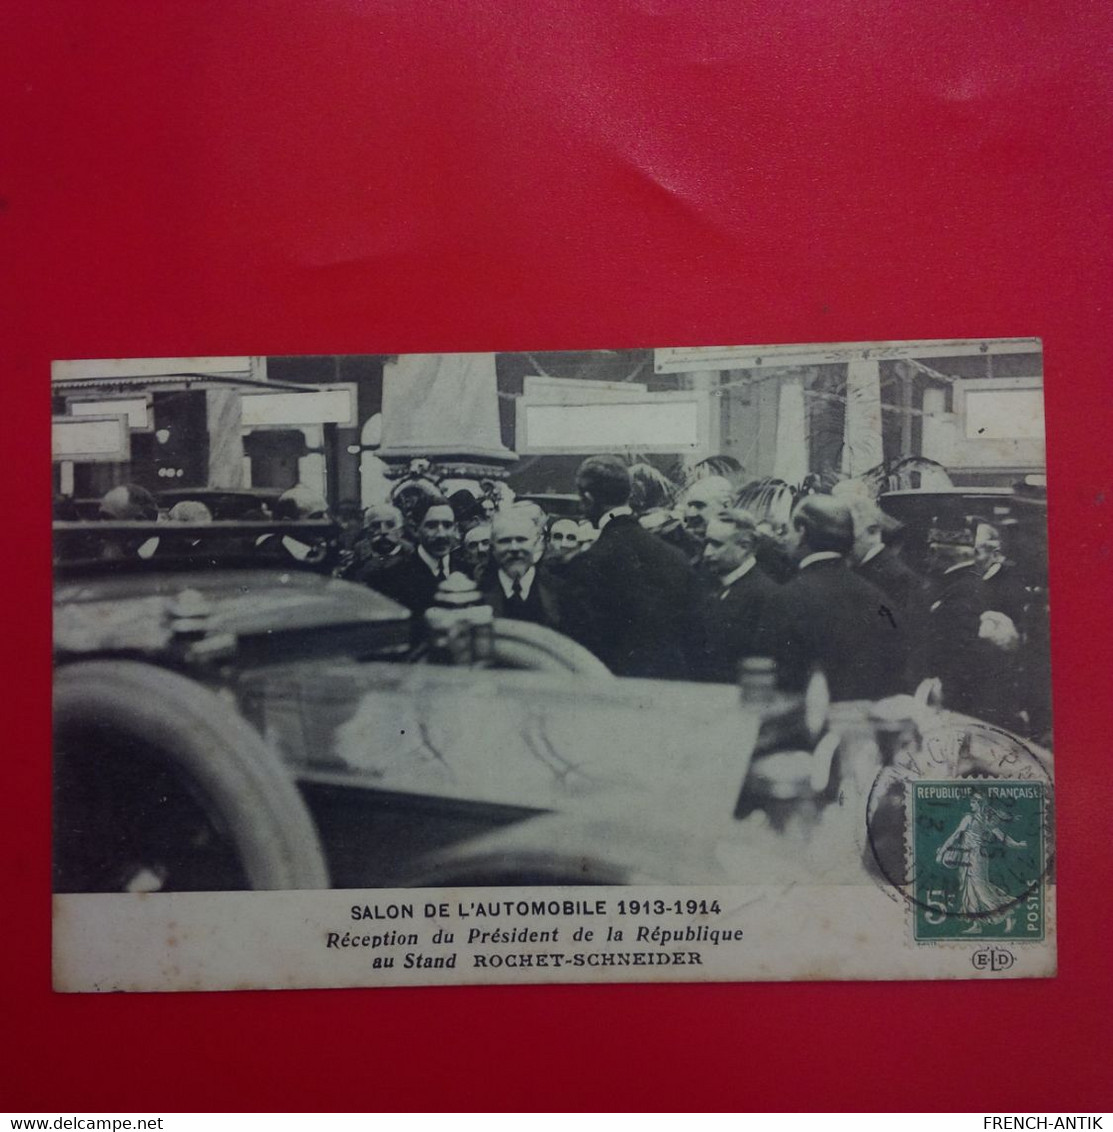 SALON DE L AUTOMOBILE 1913 1914 RECEPTION DU PRESIDENT DE LA REPUBLIQUE POINCARE AU STAND ROCHET SCHNEIDER - Eventi